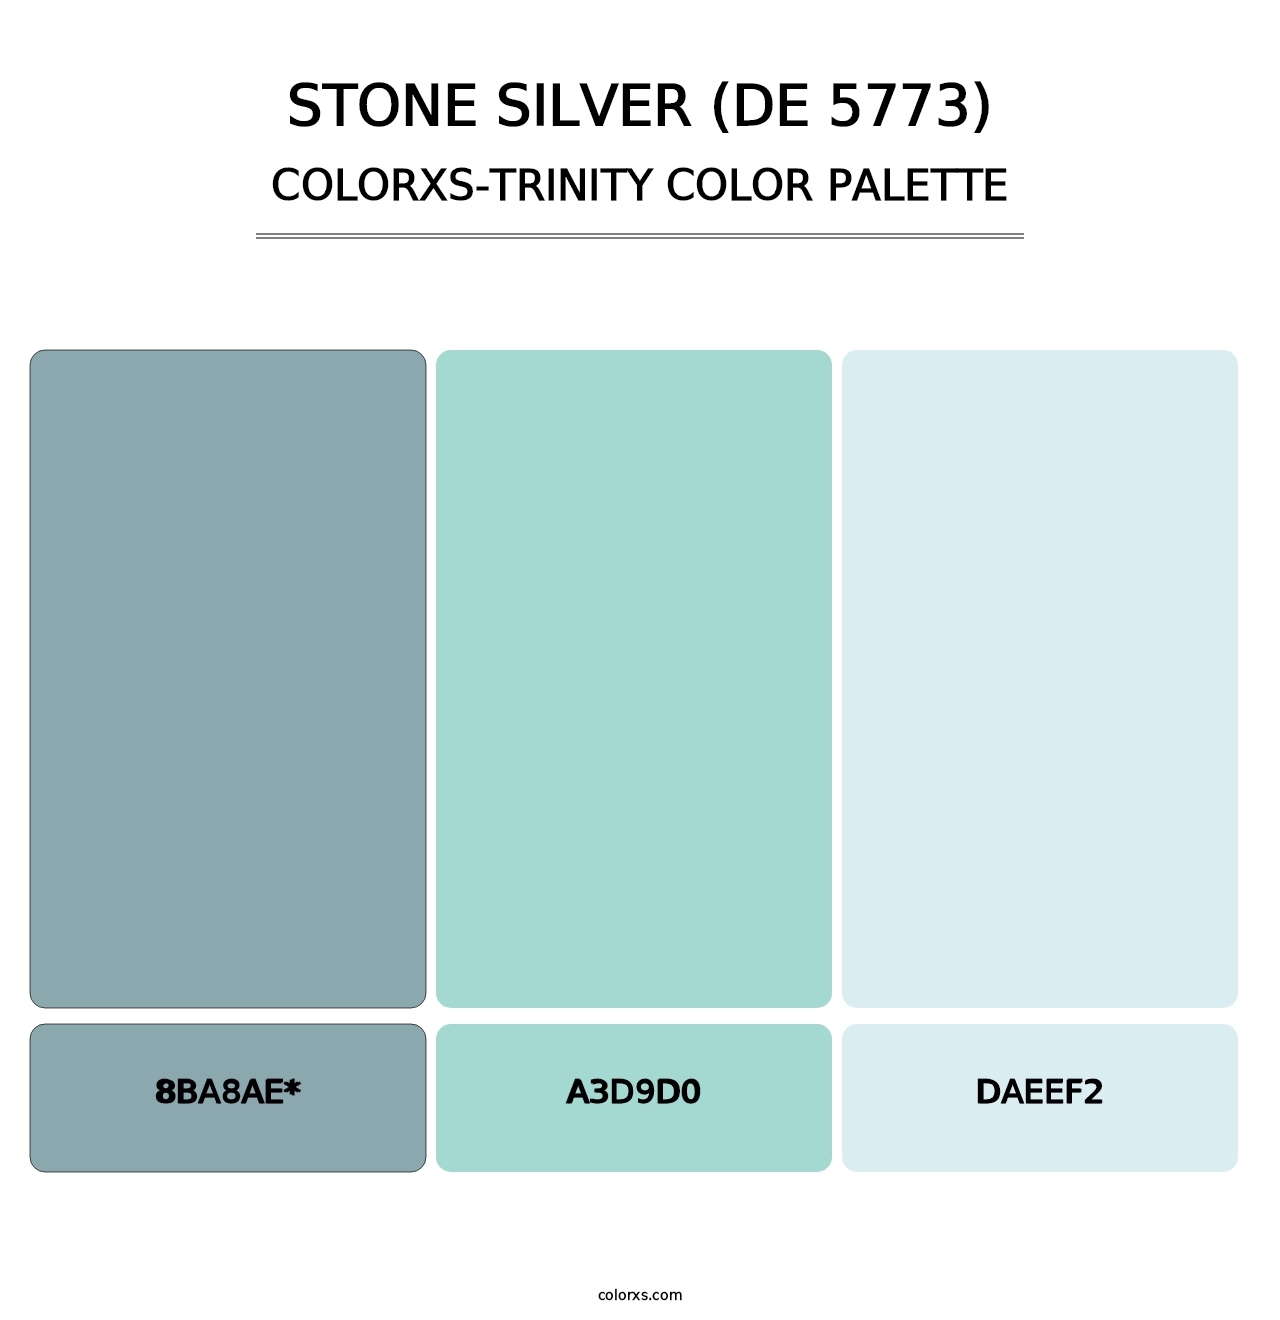 Stone Silver (DE 5773) - Colorxs Trinity Palette